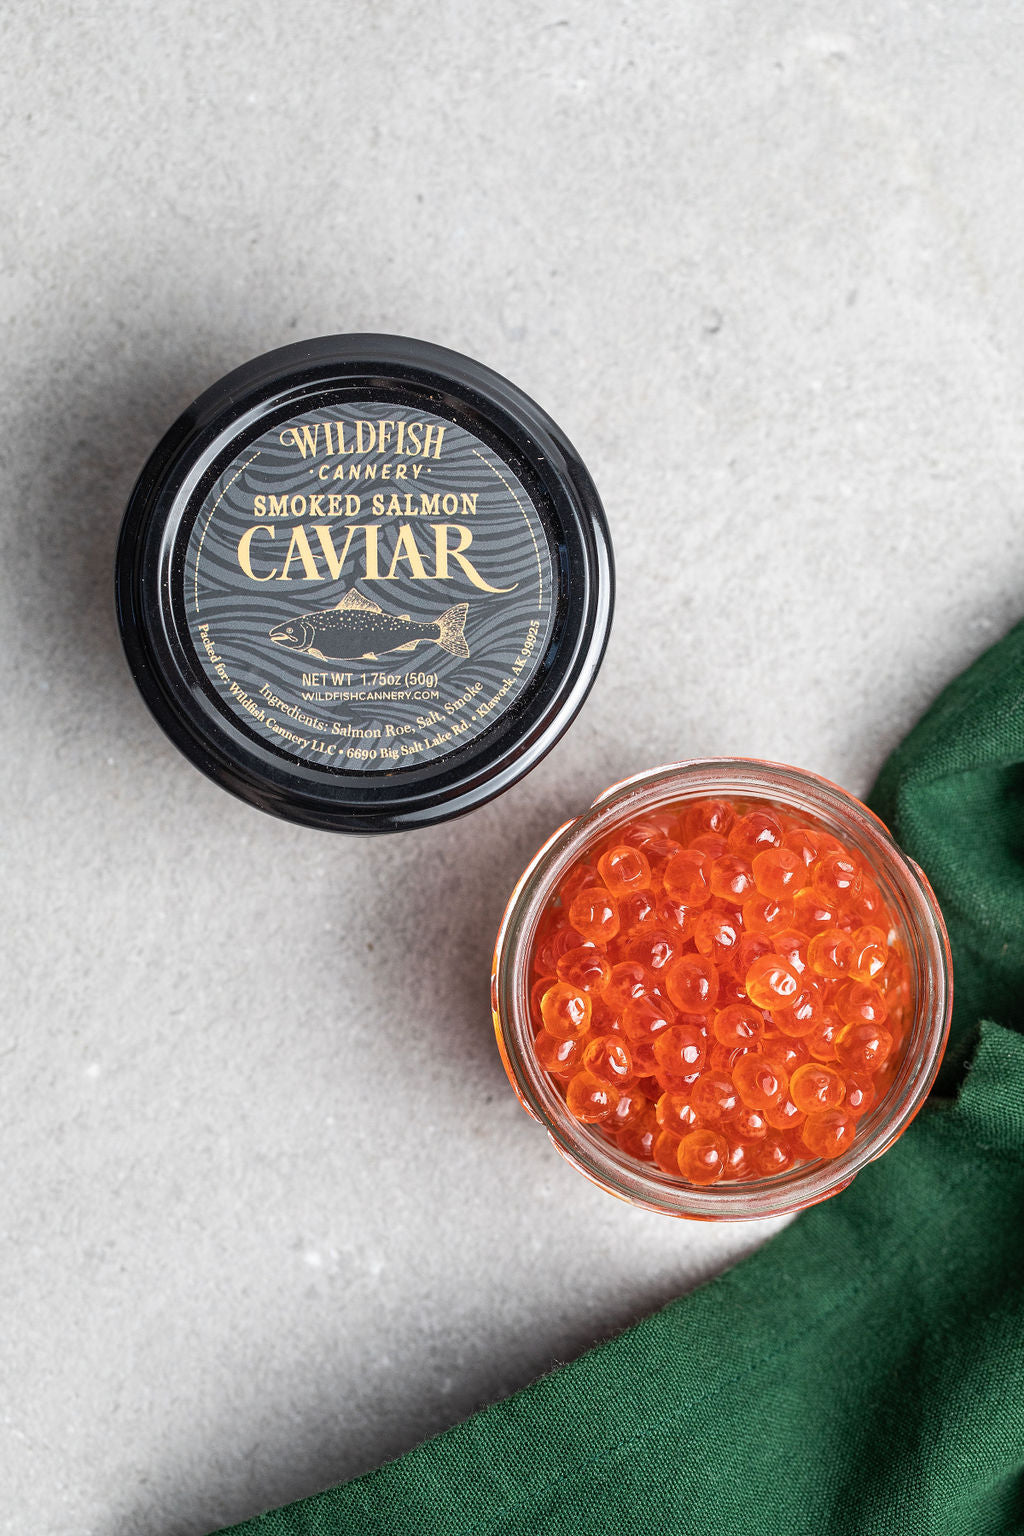 Wildfish Cannery Smoked Salmon Caviar